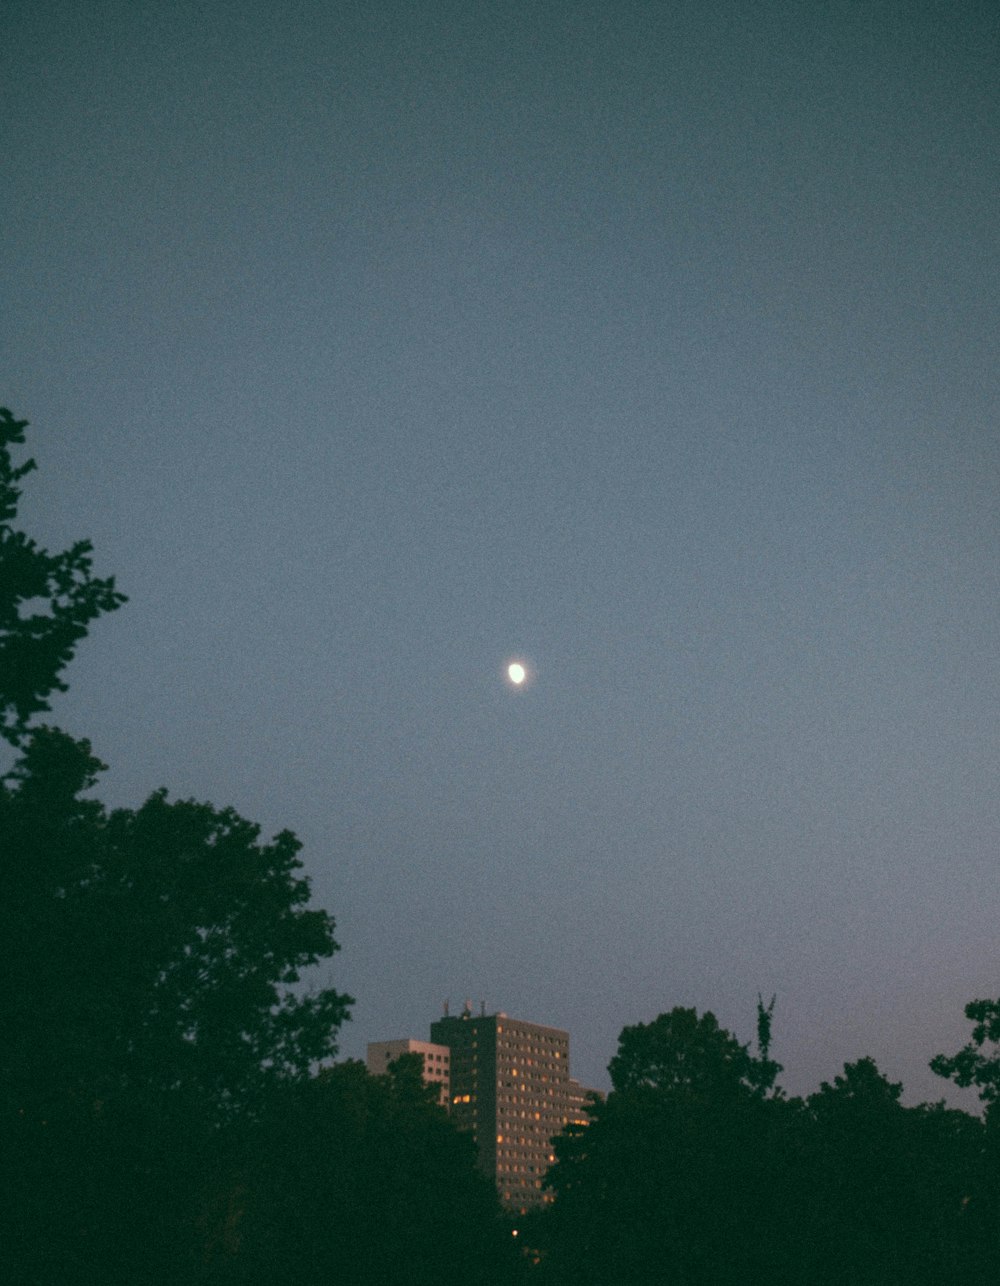 Une pleine lune est vue dans le ciel au-dessus des arbres